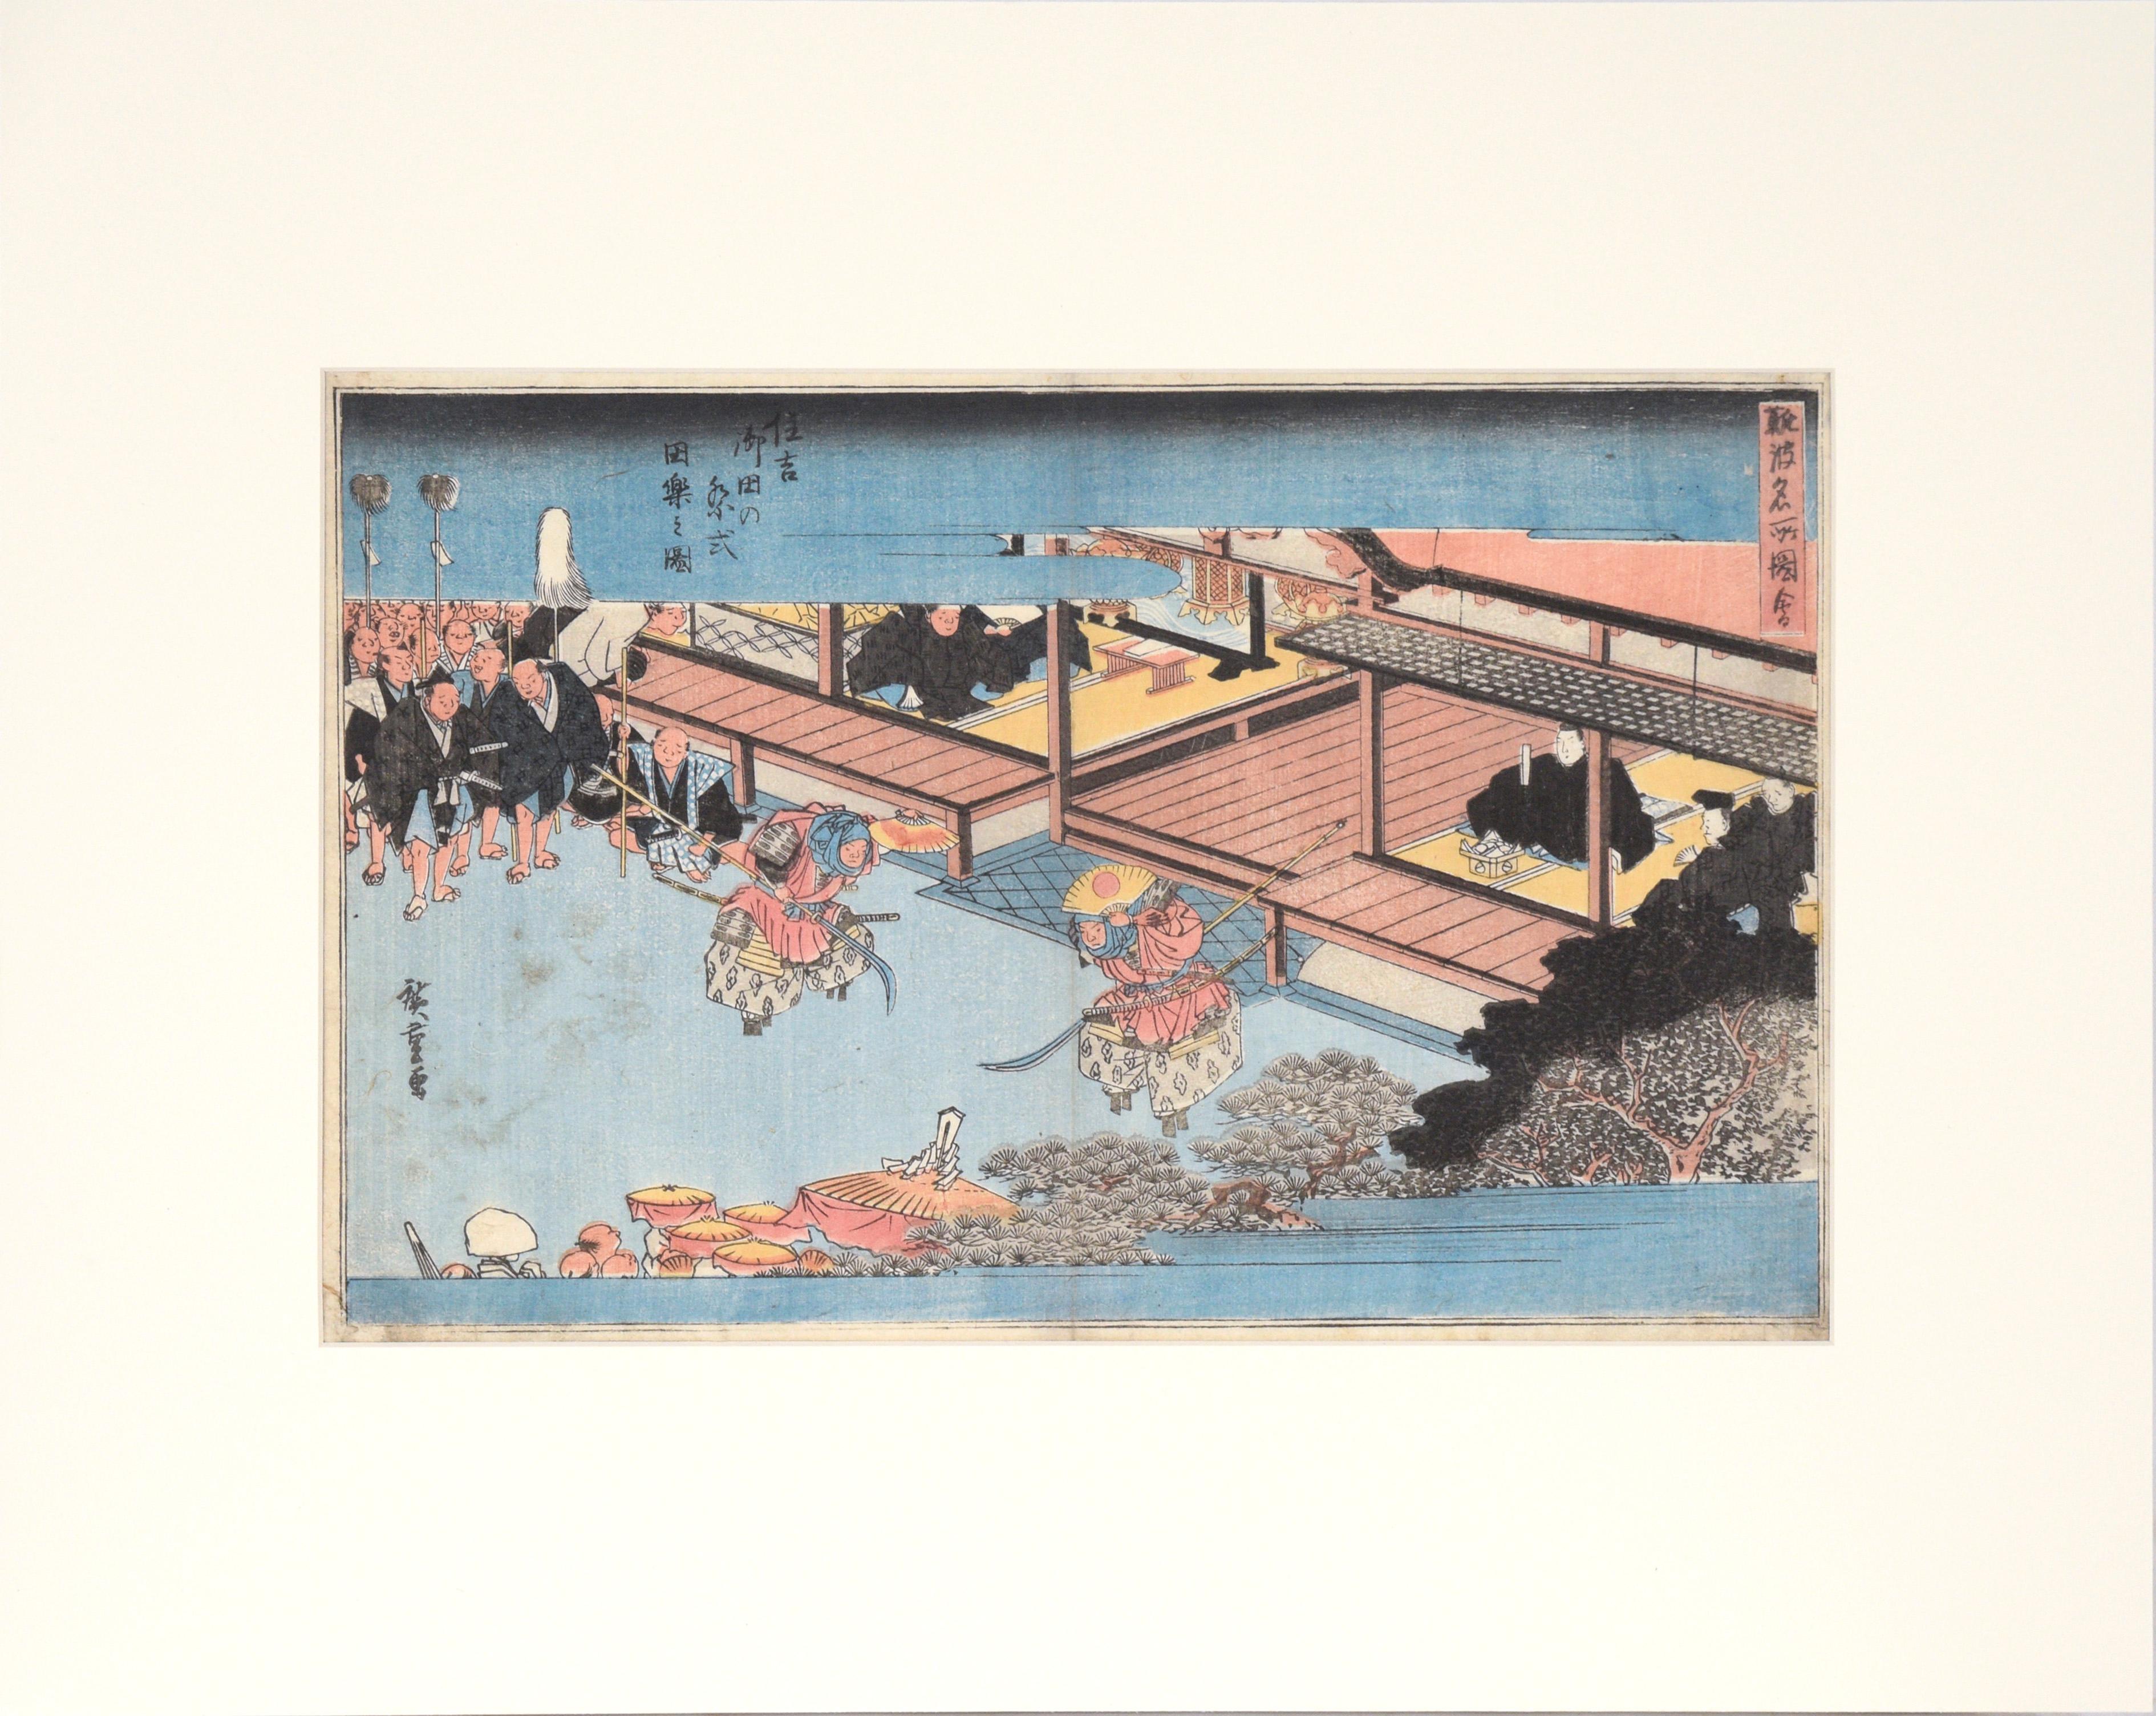 Landscape Print Utagawa Hiroshige - Sumiyoshi : danse de Dengaku exécutée lors d'une cérémonie Onda - gravure sur bois